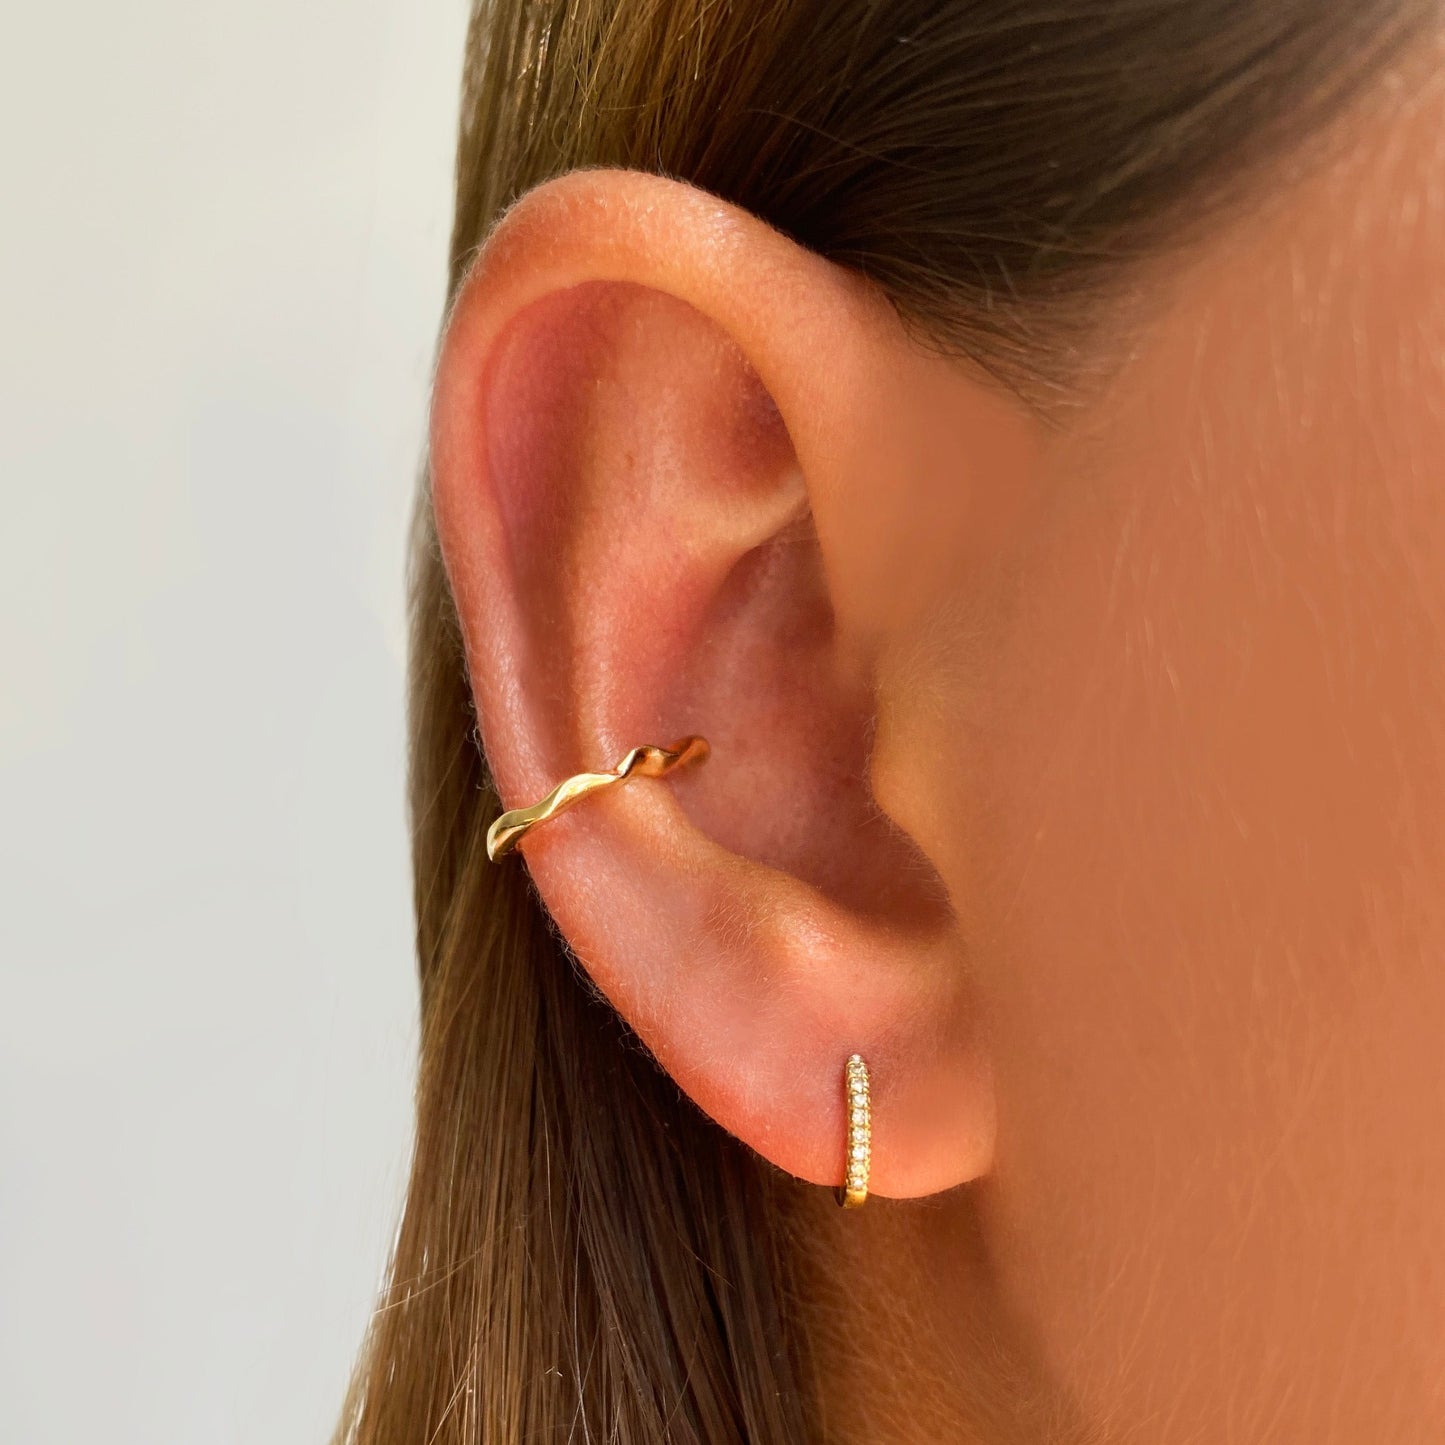 14k gold Ripple Midi Ear Cuff styled on a ear